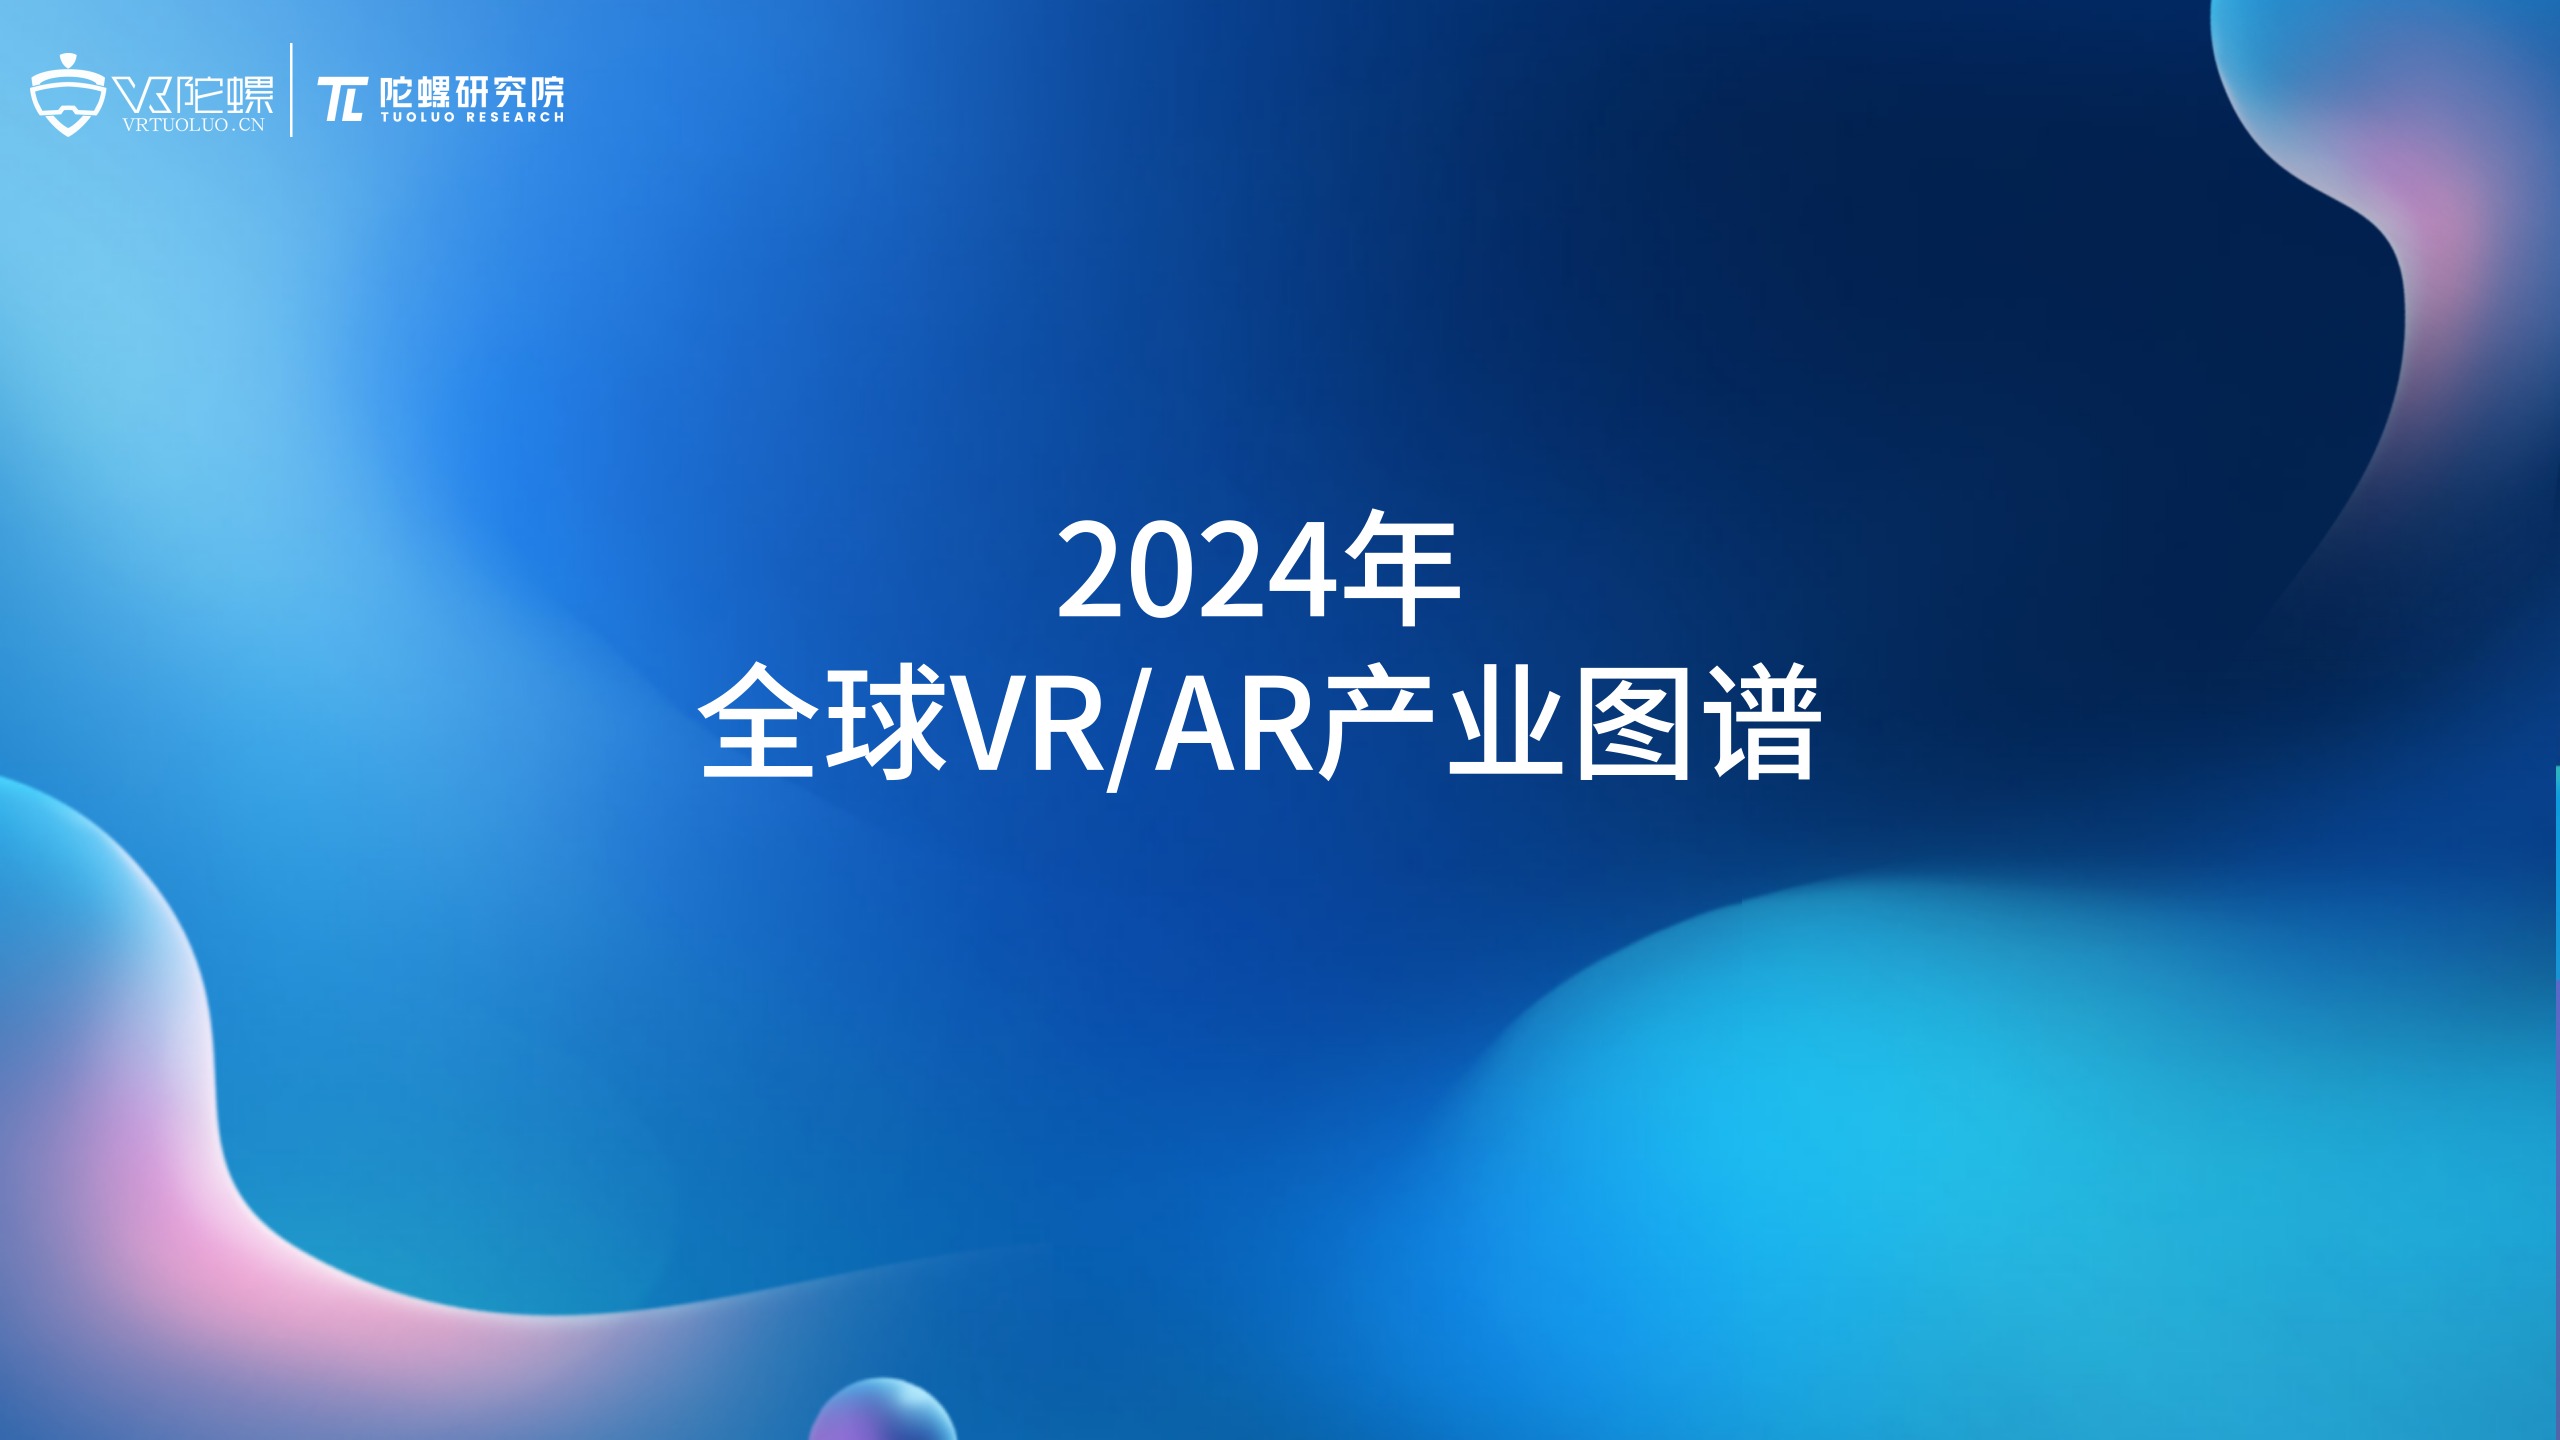 陀螺研究院发布 《2024年全球VR/AR产业图谱》